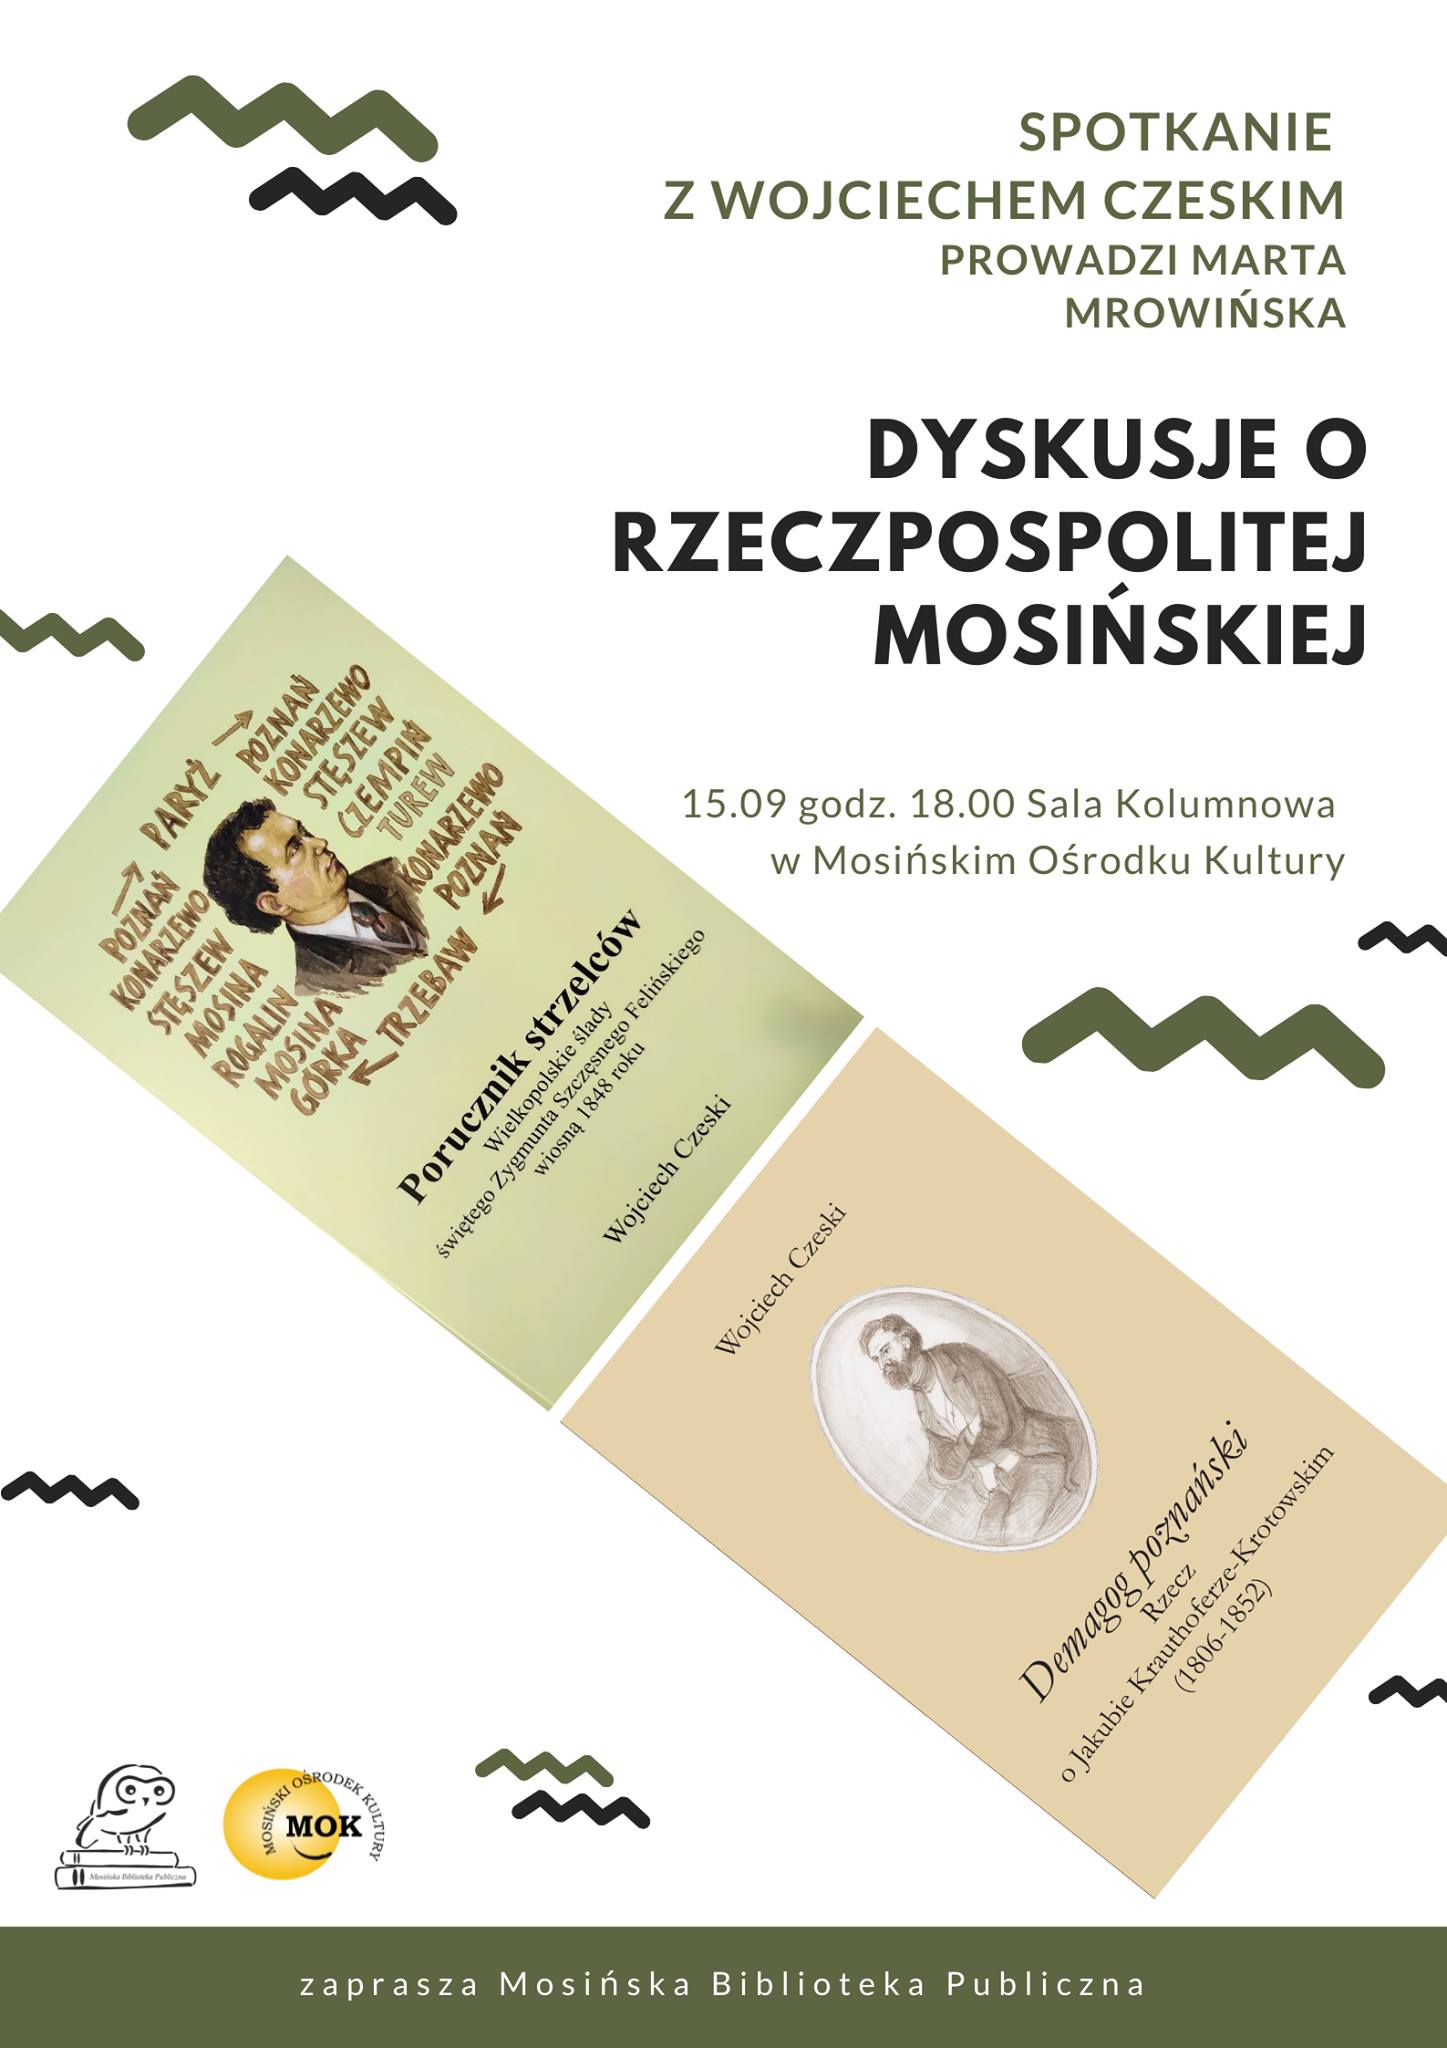 Plakat przedstawia okładki książek Wojciecha Czeskiego. Mosińska Biblioteka Publiczna i Mosiński Ośrodek Kultury zapraszają 15 września na spotkanie z Wojciechem Czeskim. Dyskusję poprowadzi Marta Mrowińska.